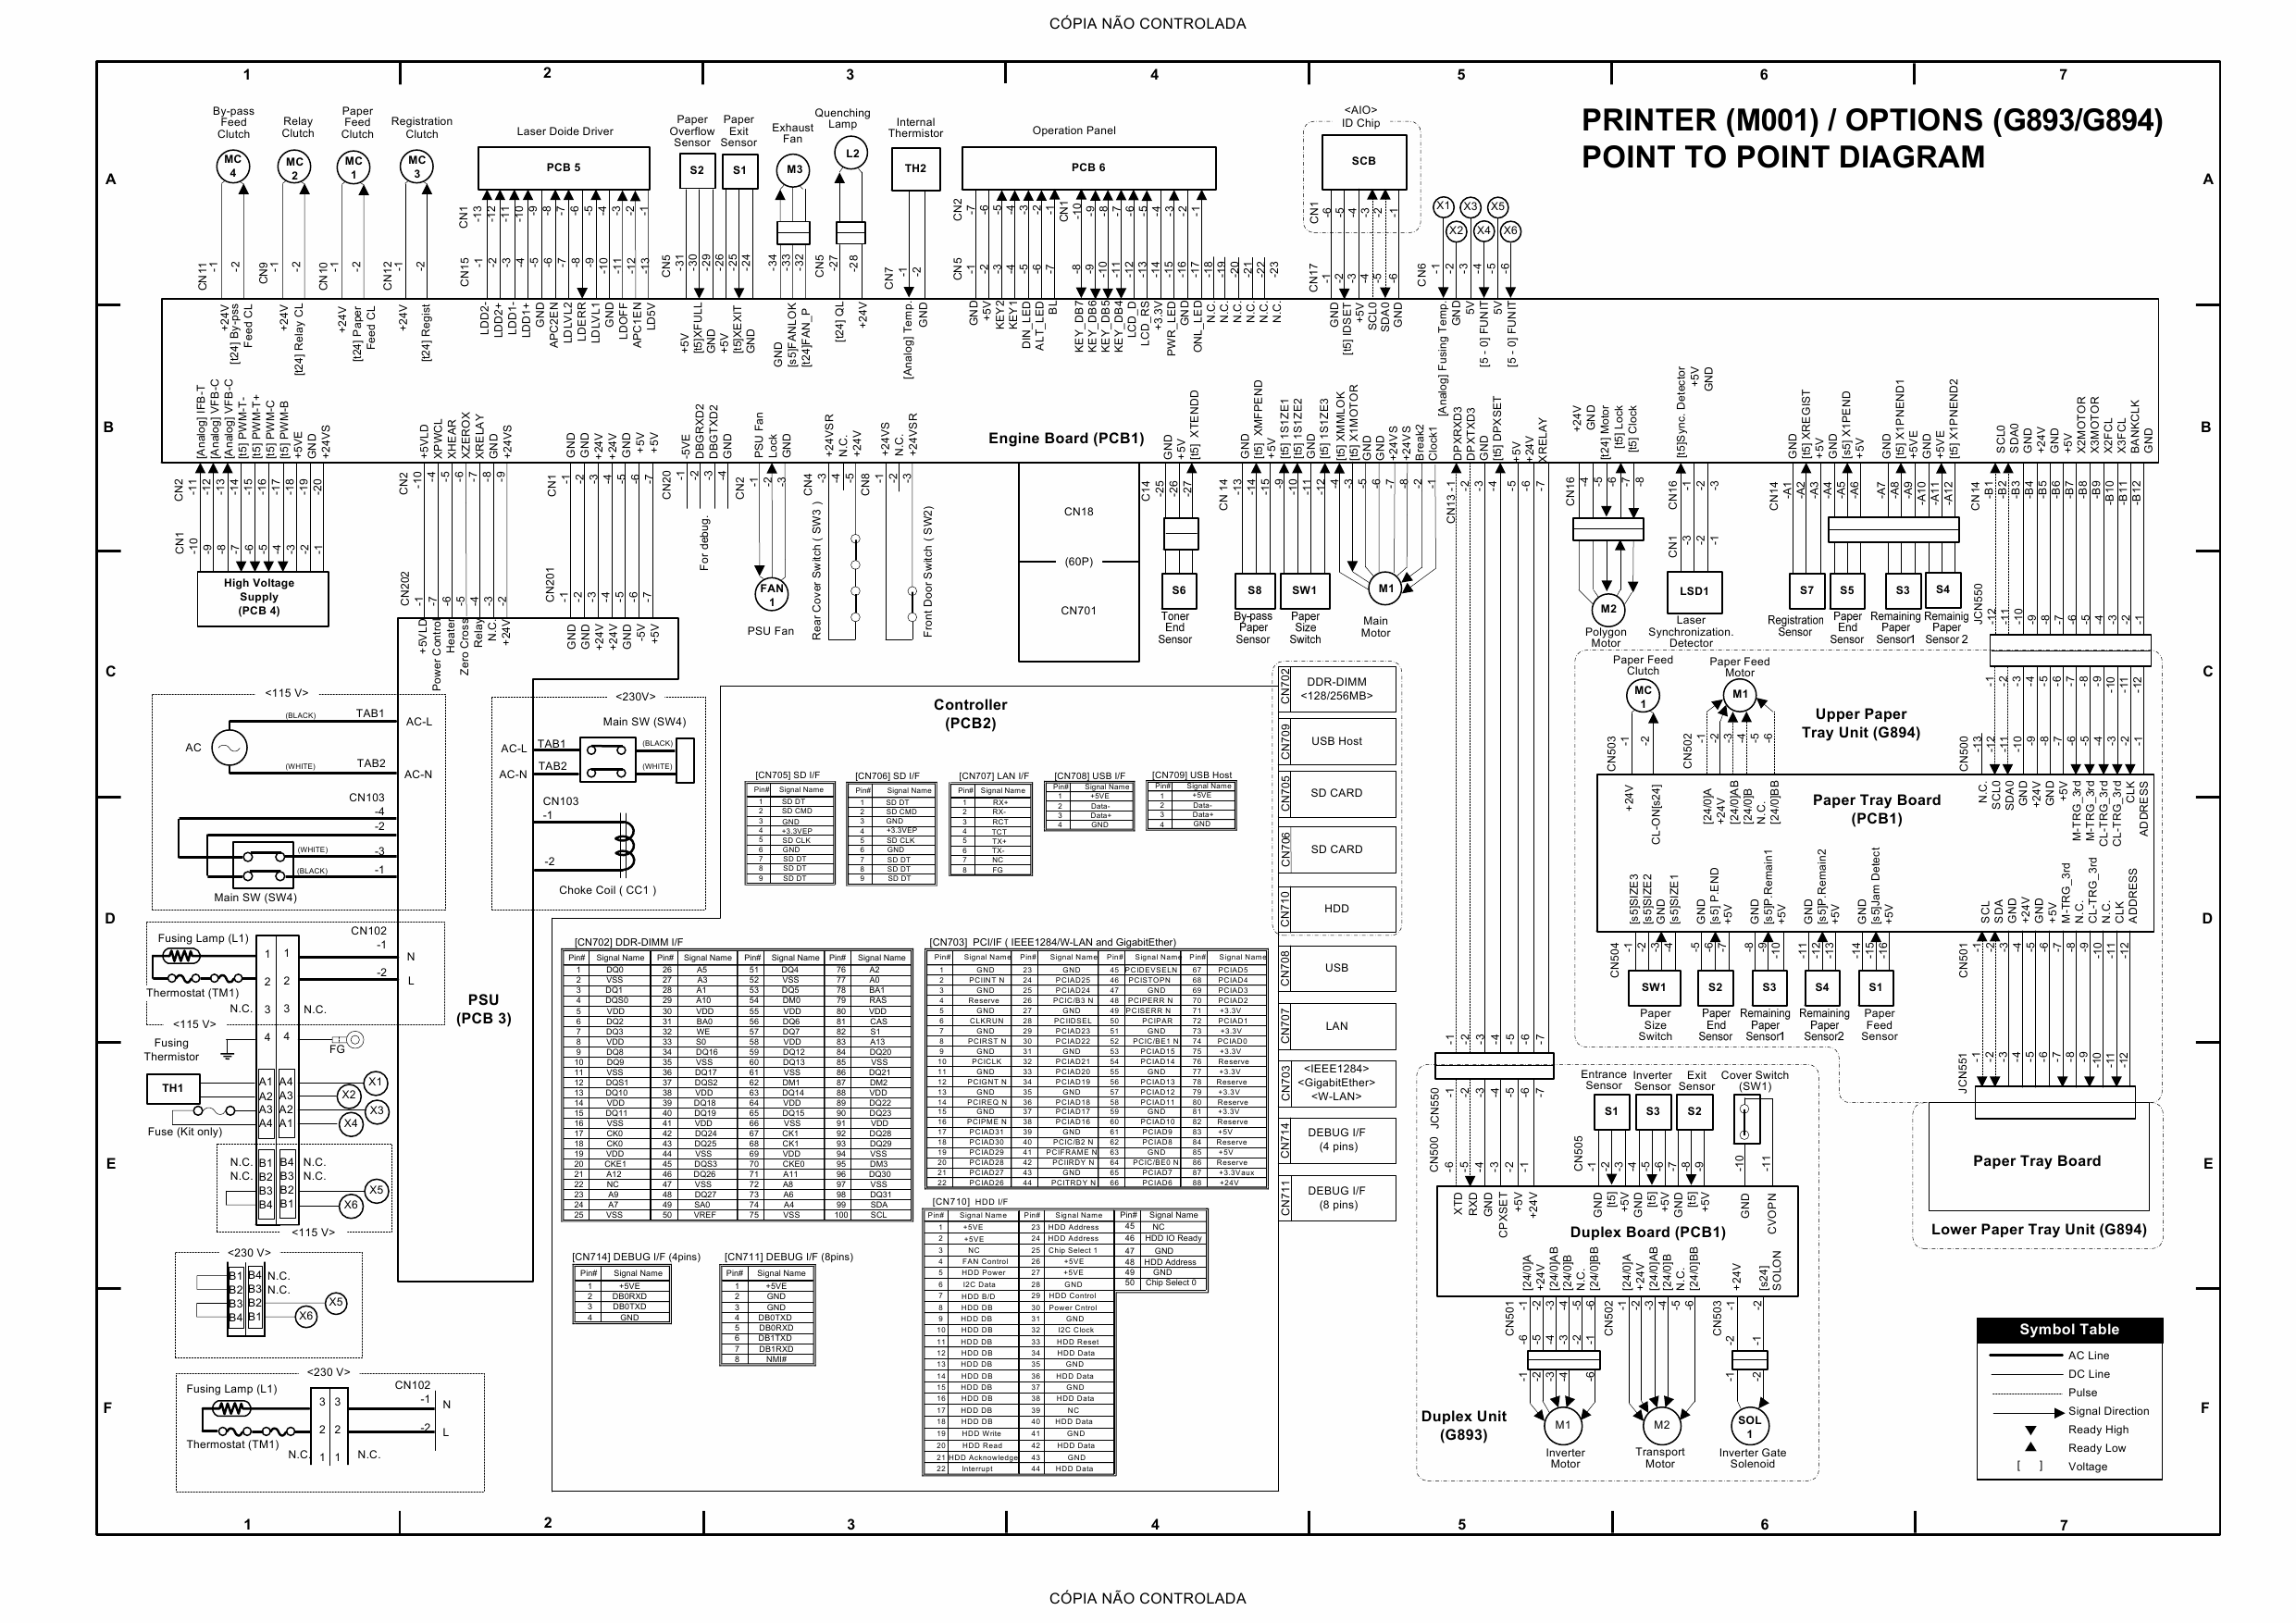 RICOH Aficio SP-4200N M001 Circuit Diagram-1